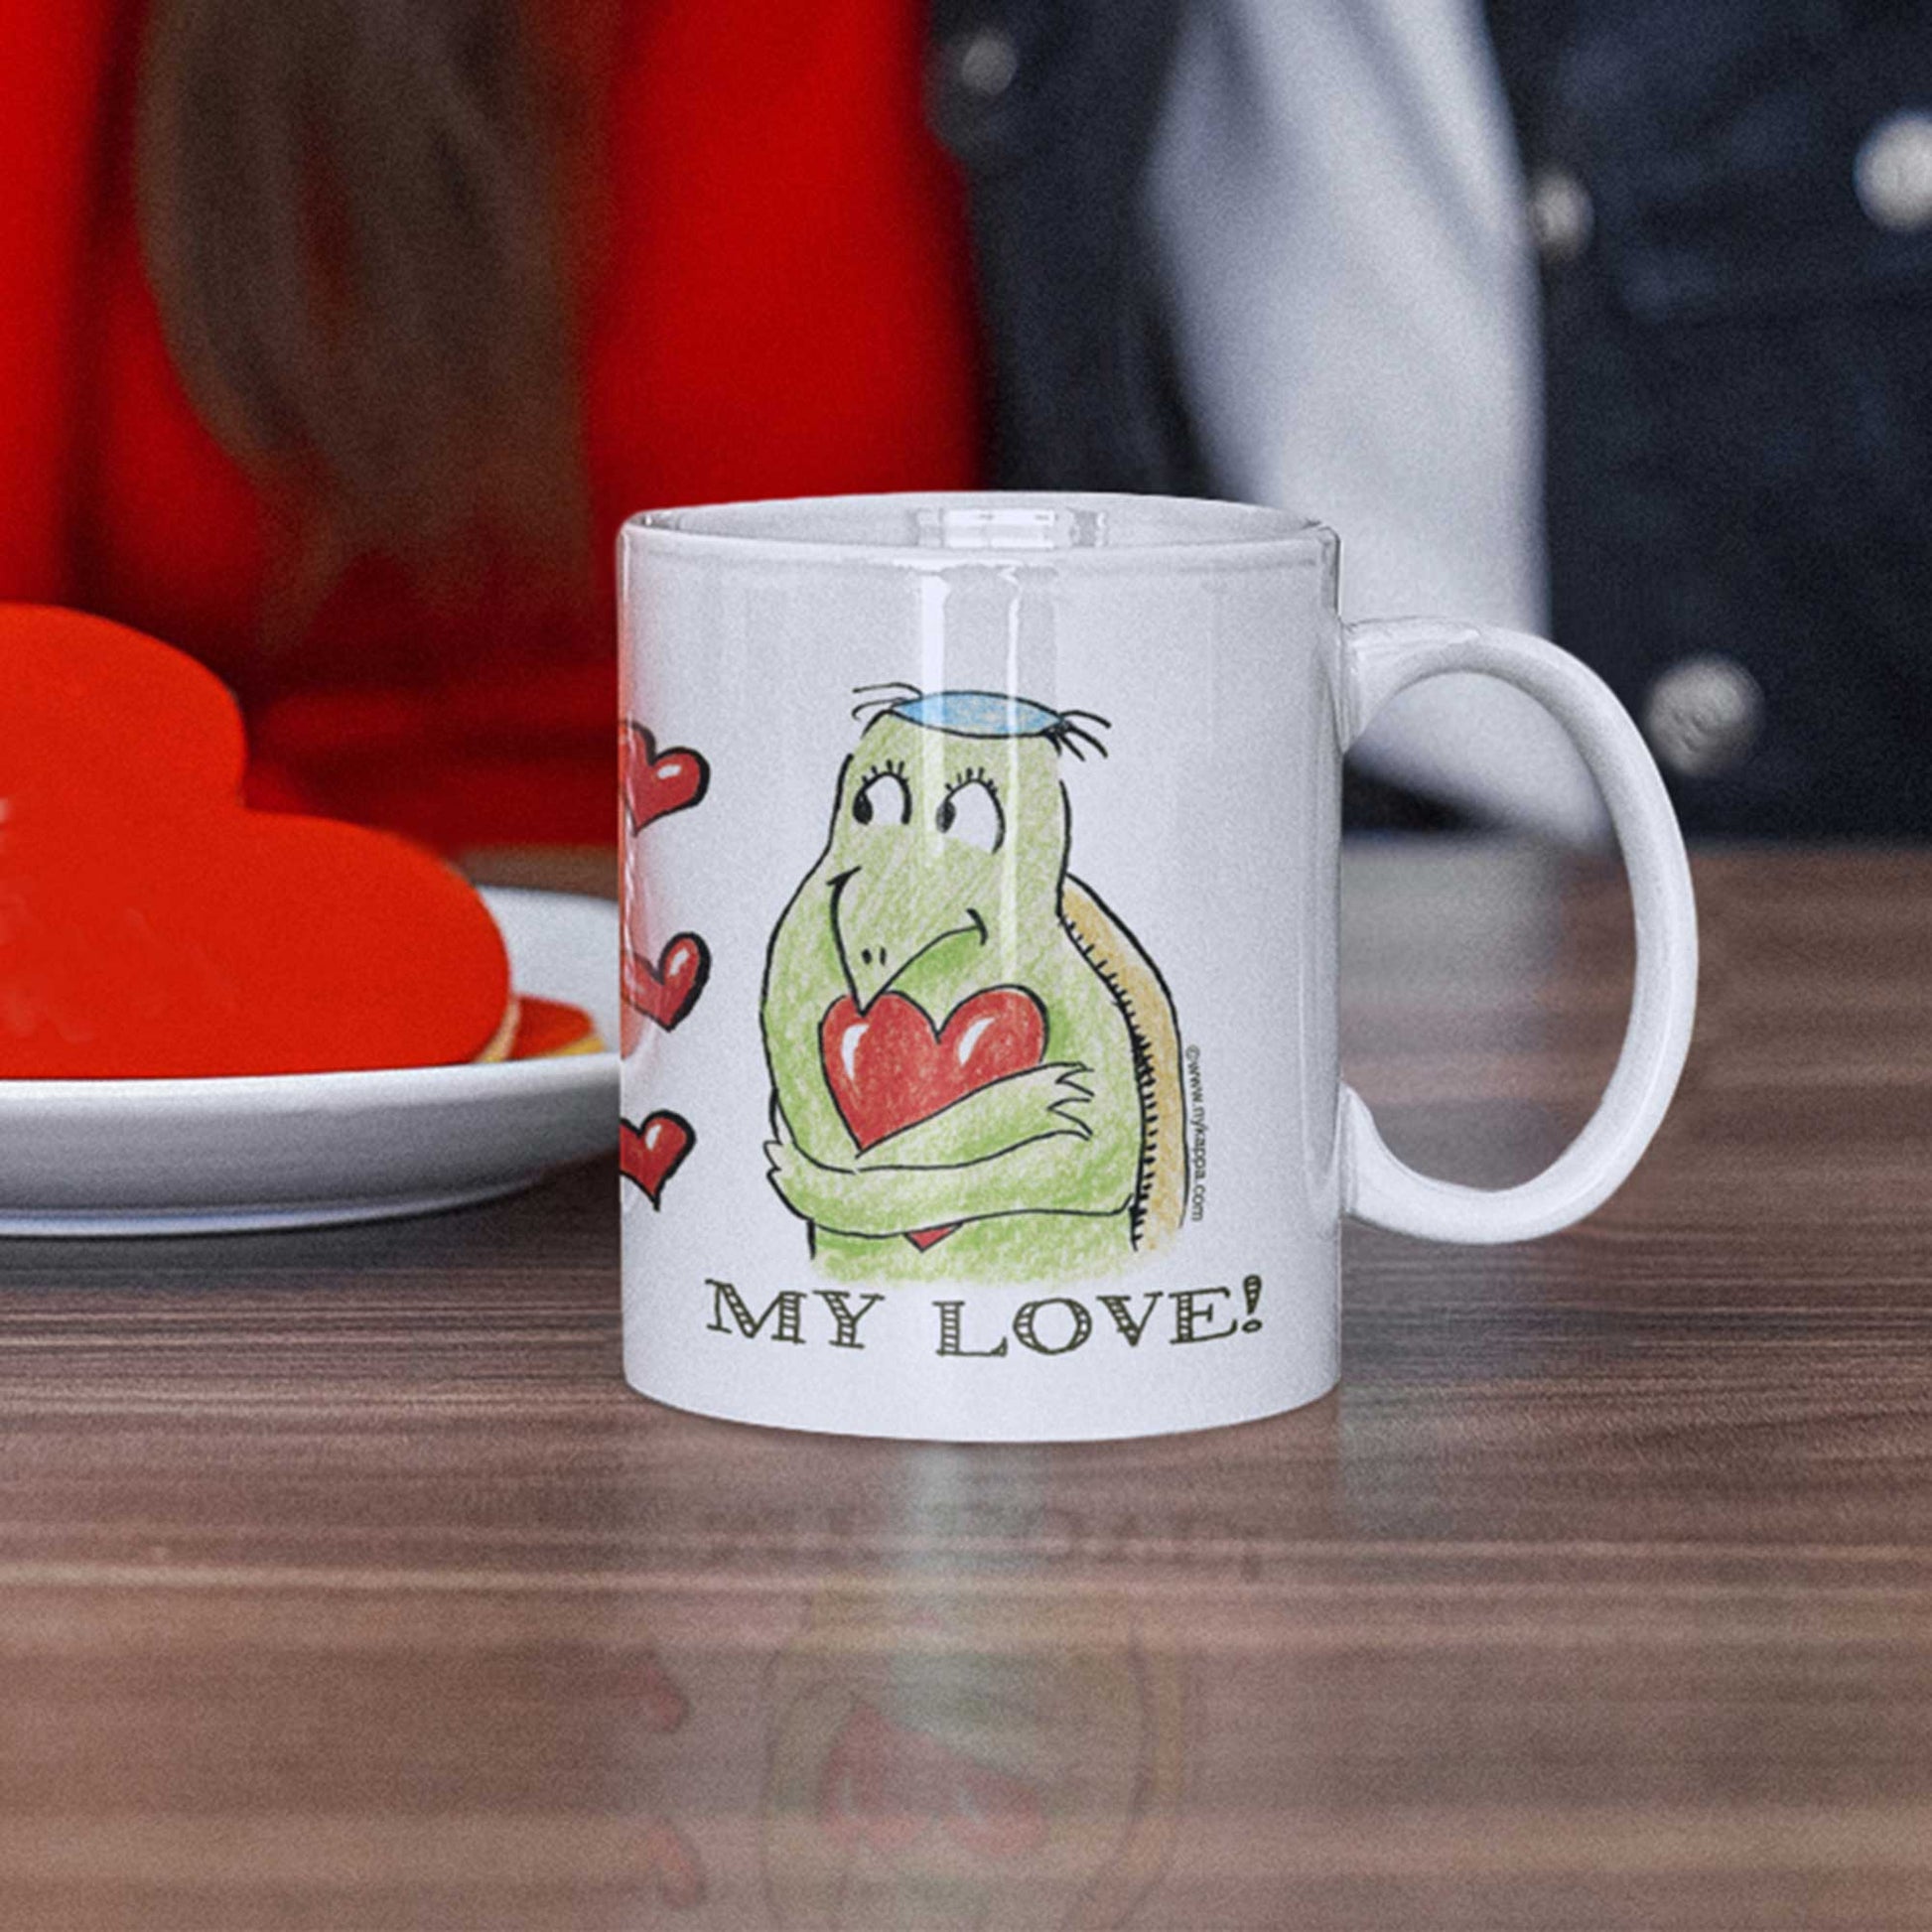 かわいいな NYのカッパ "LOVE YOU, MY LOVE!" NYの河童 かっぱ コーヒー マグカップ NY Kappa Love You, My Love Coffee Mug Cup 2